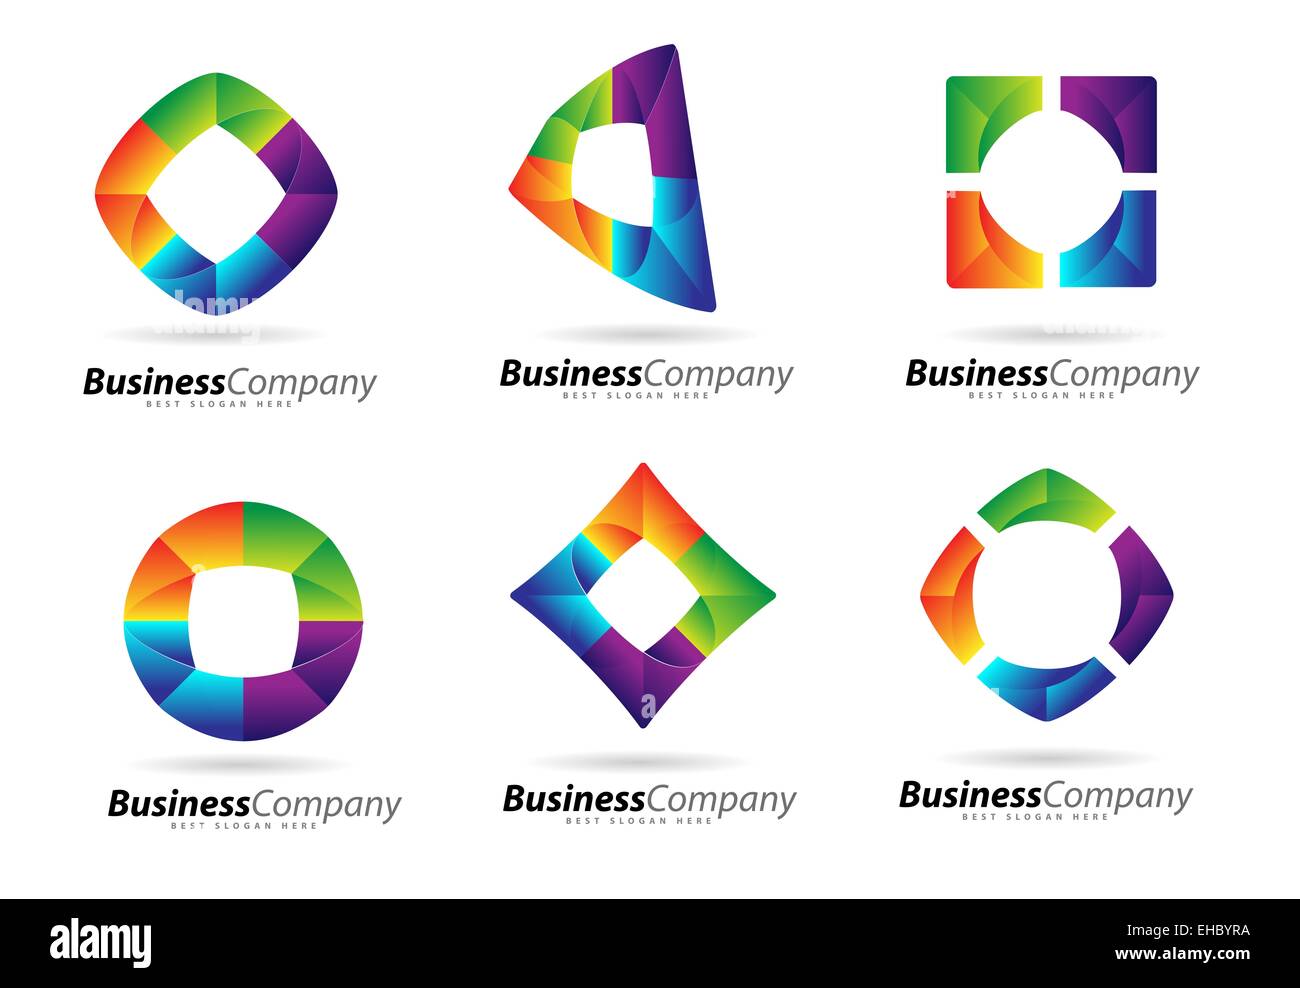 Logo d'entreprise. Résumé de la création de logo d'entreprise. Les vecteurs d'affaires colorés Banque D'Images